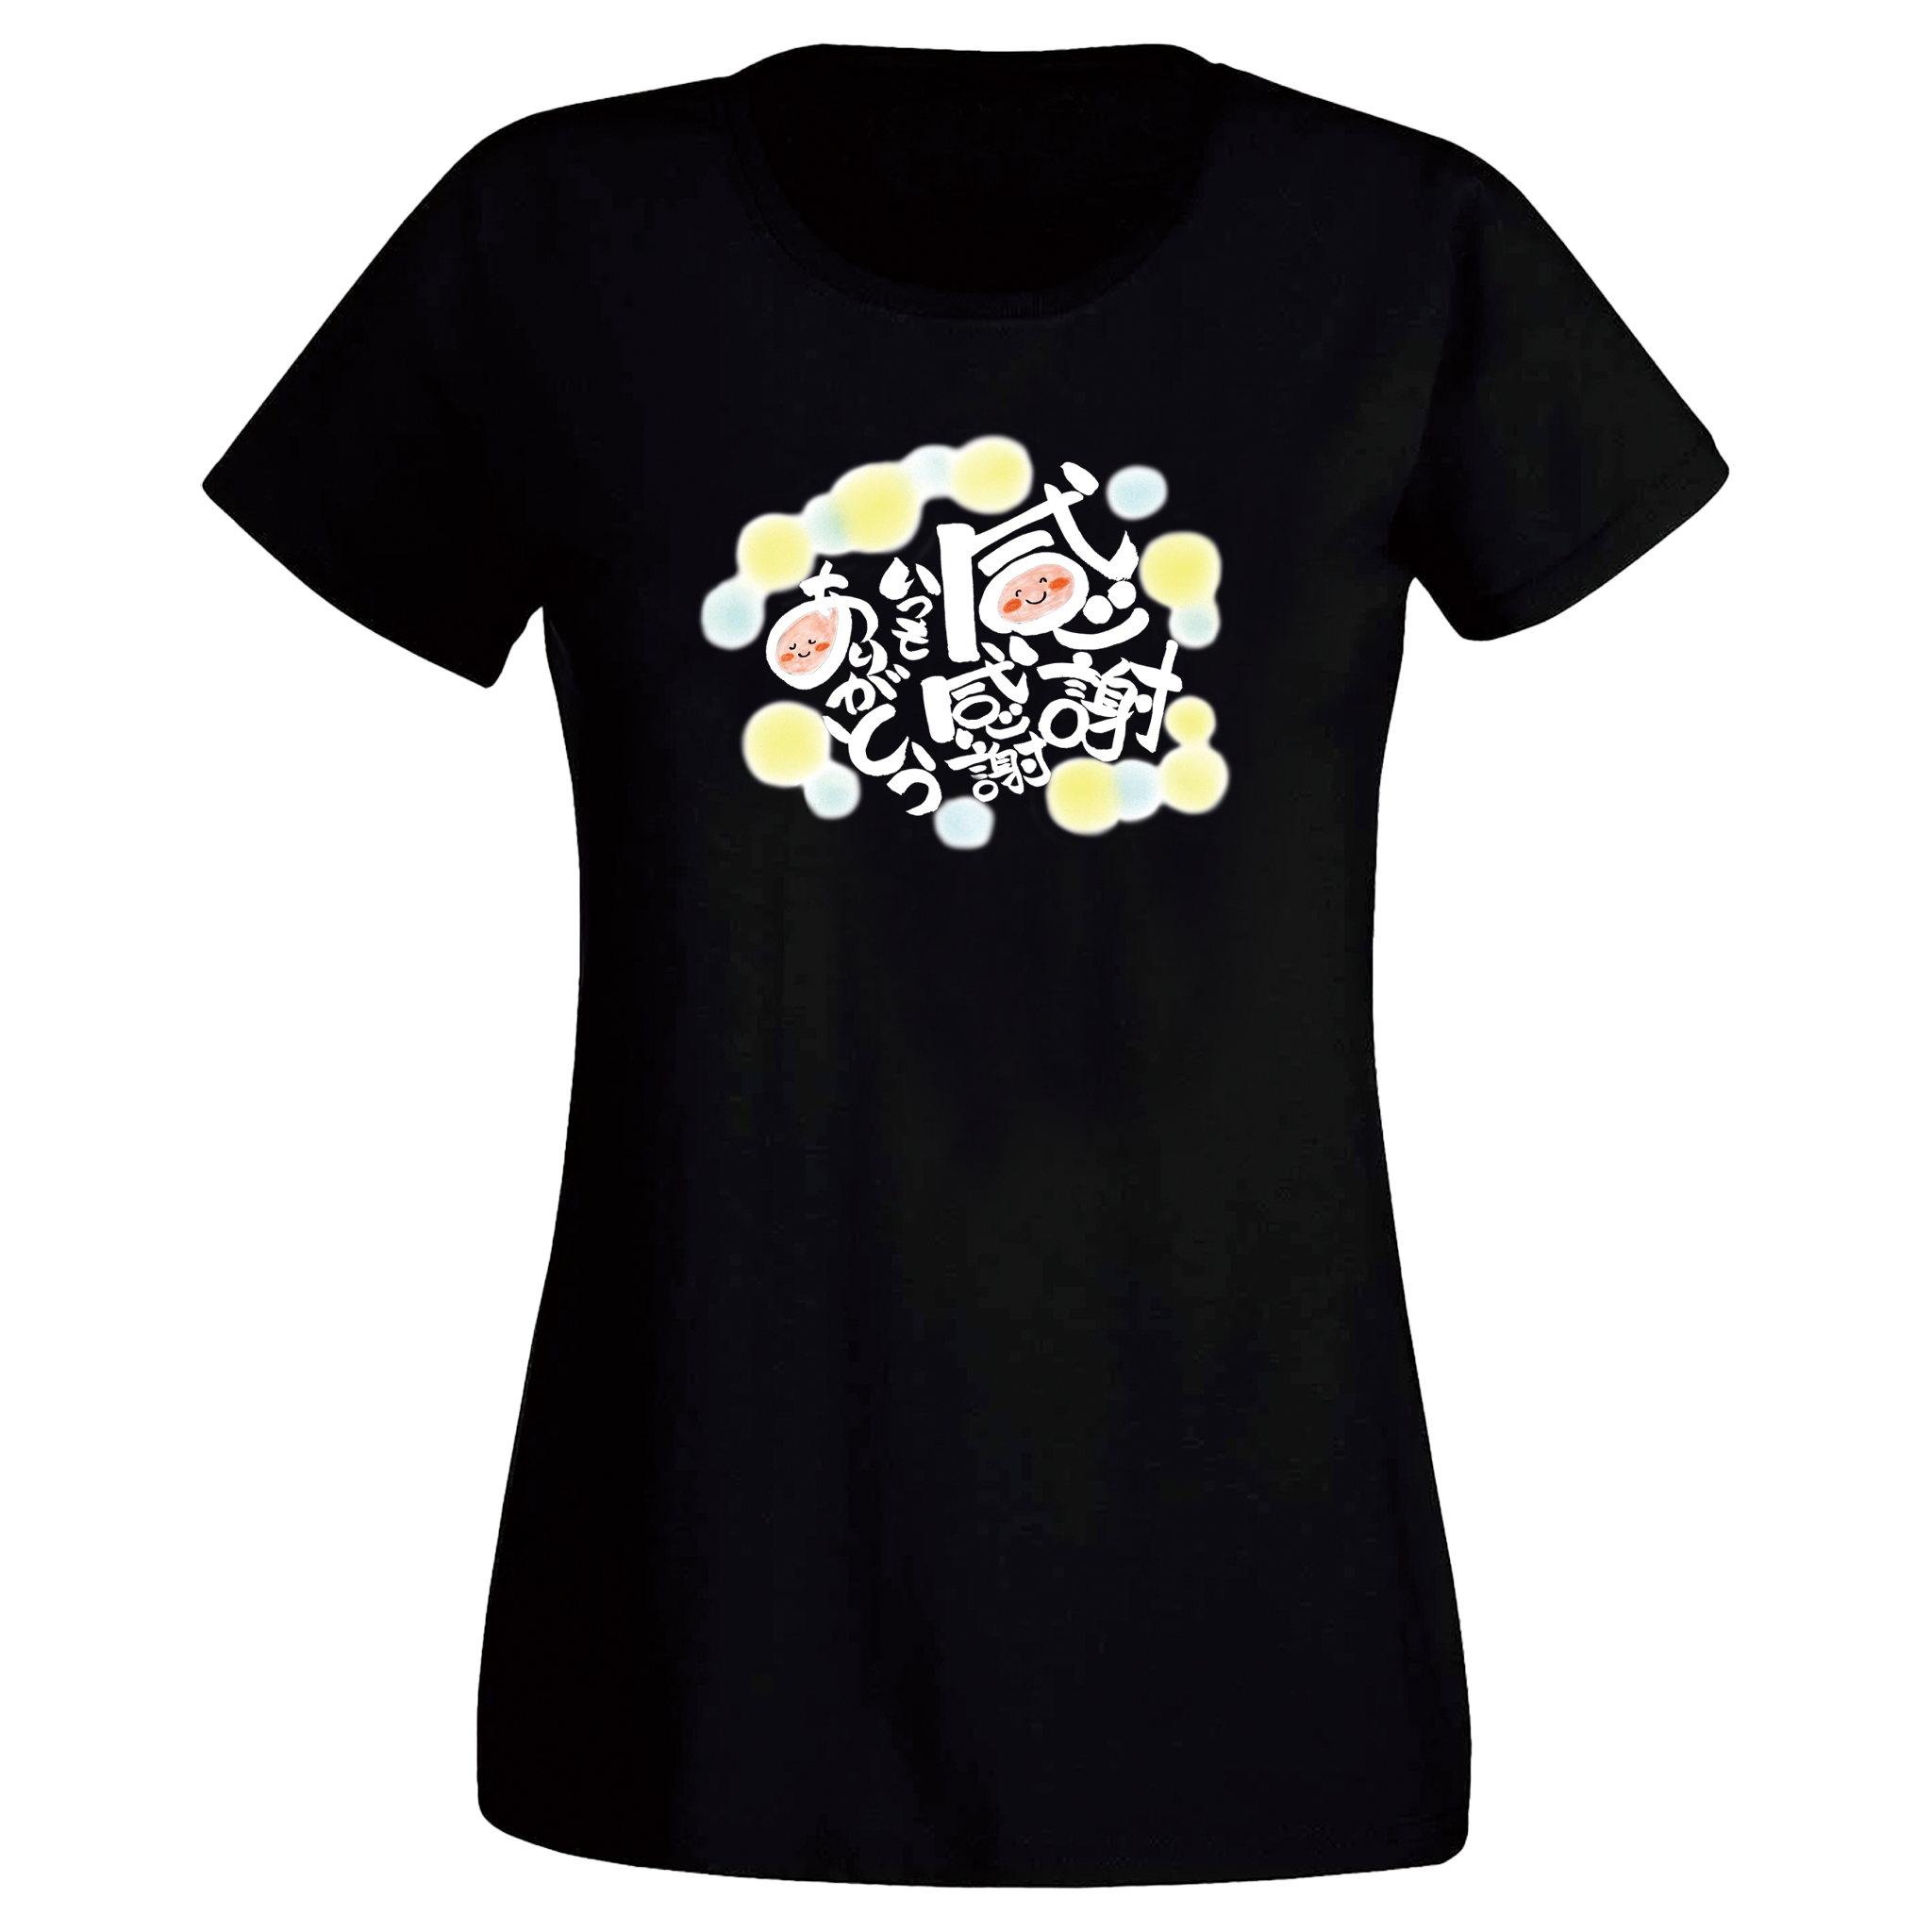 ARIGATO Womens Japanese T-Shirt - Black